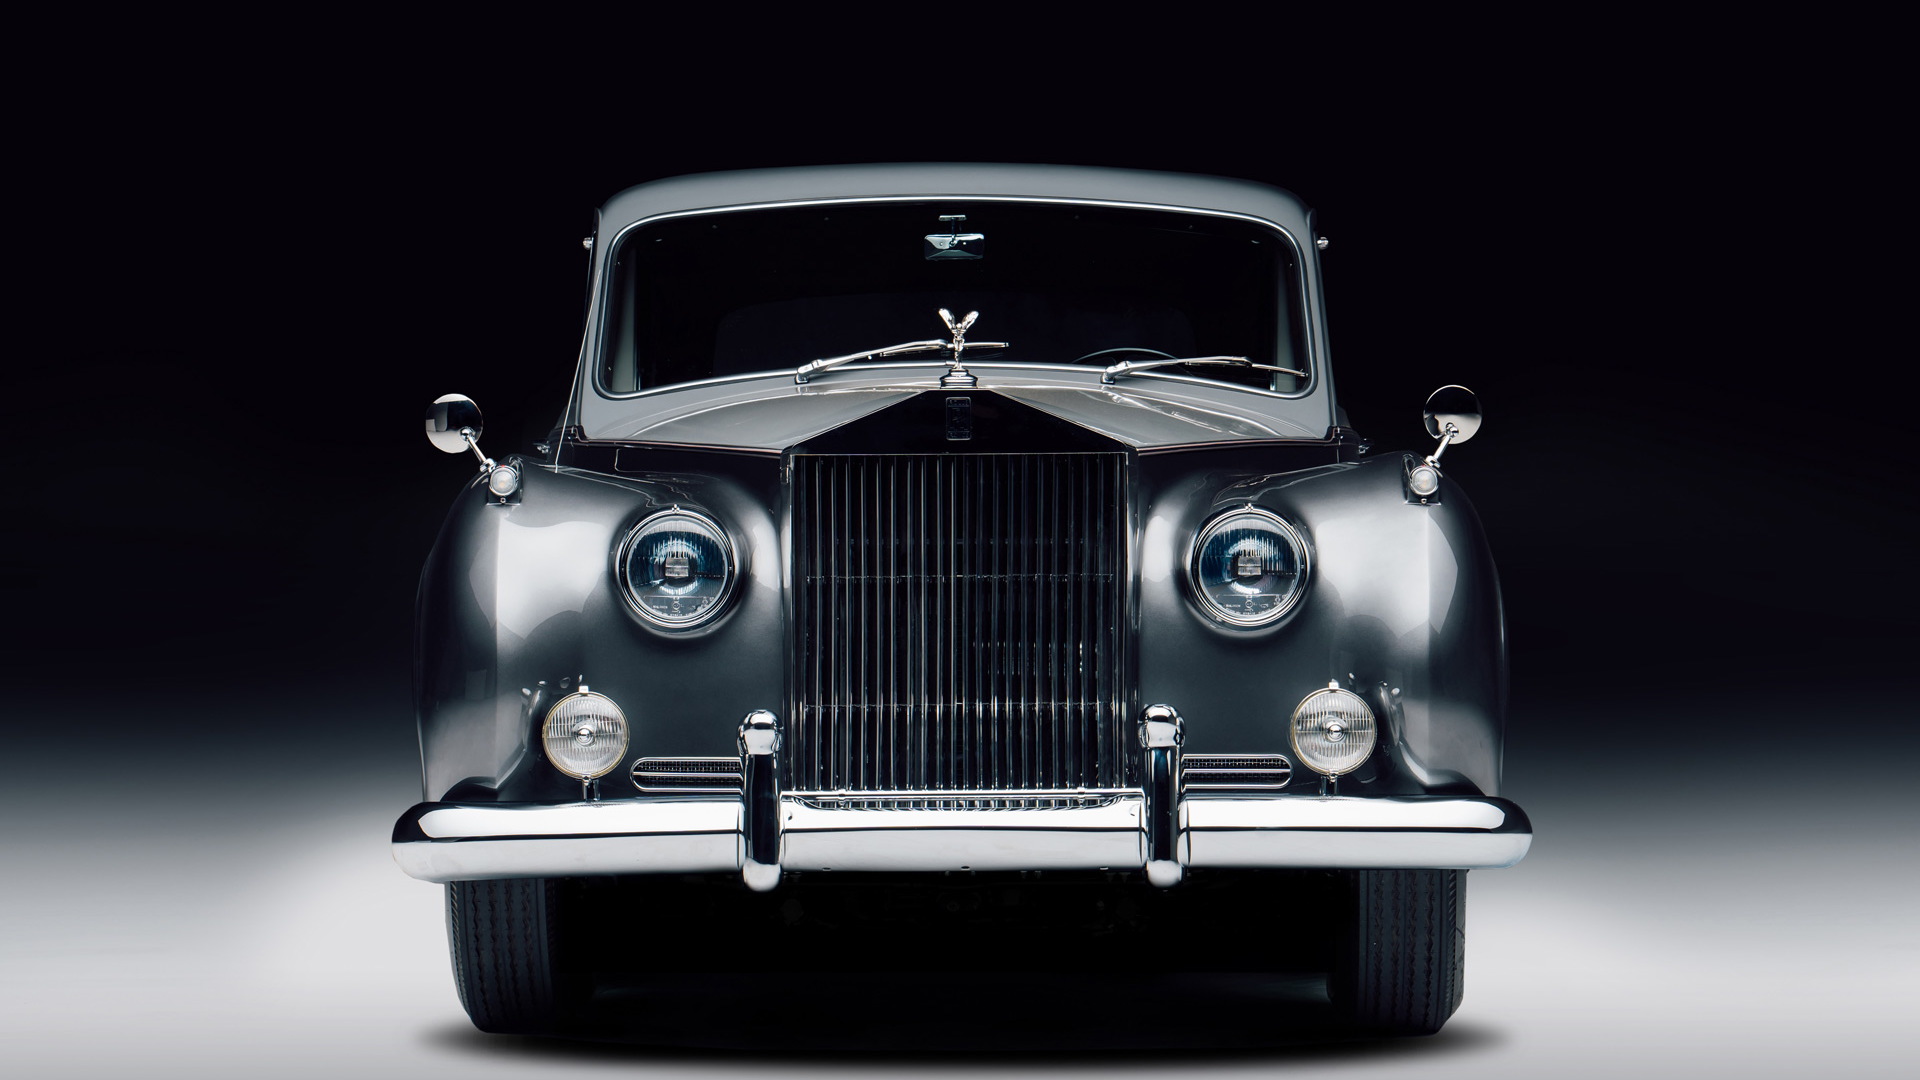 1961 Rolls-Royce Phantom EV conversion by Lunaz